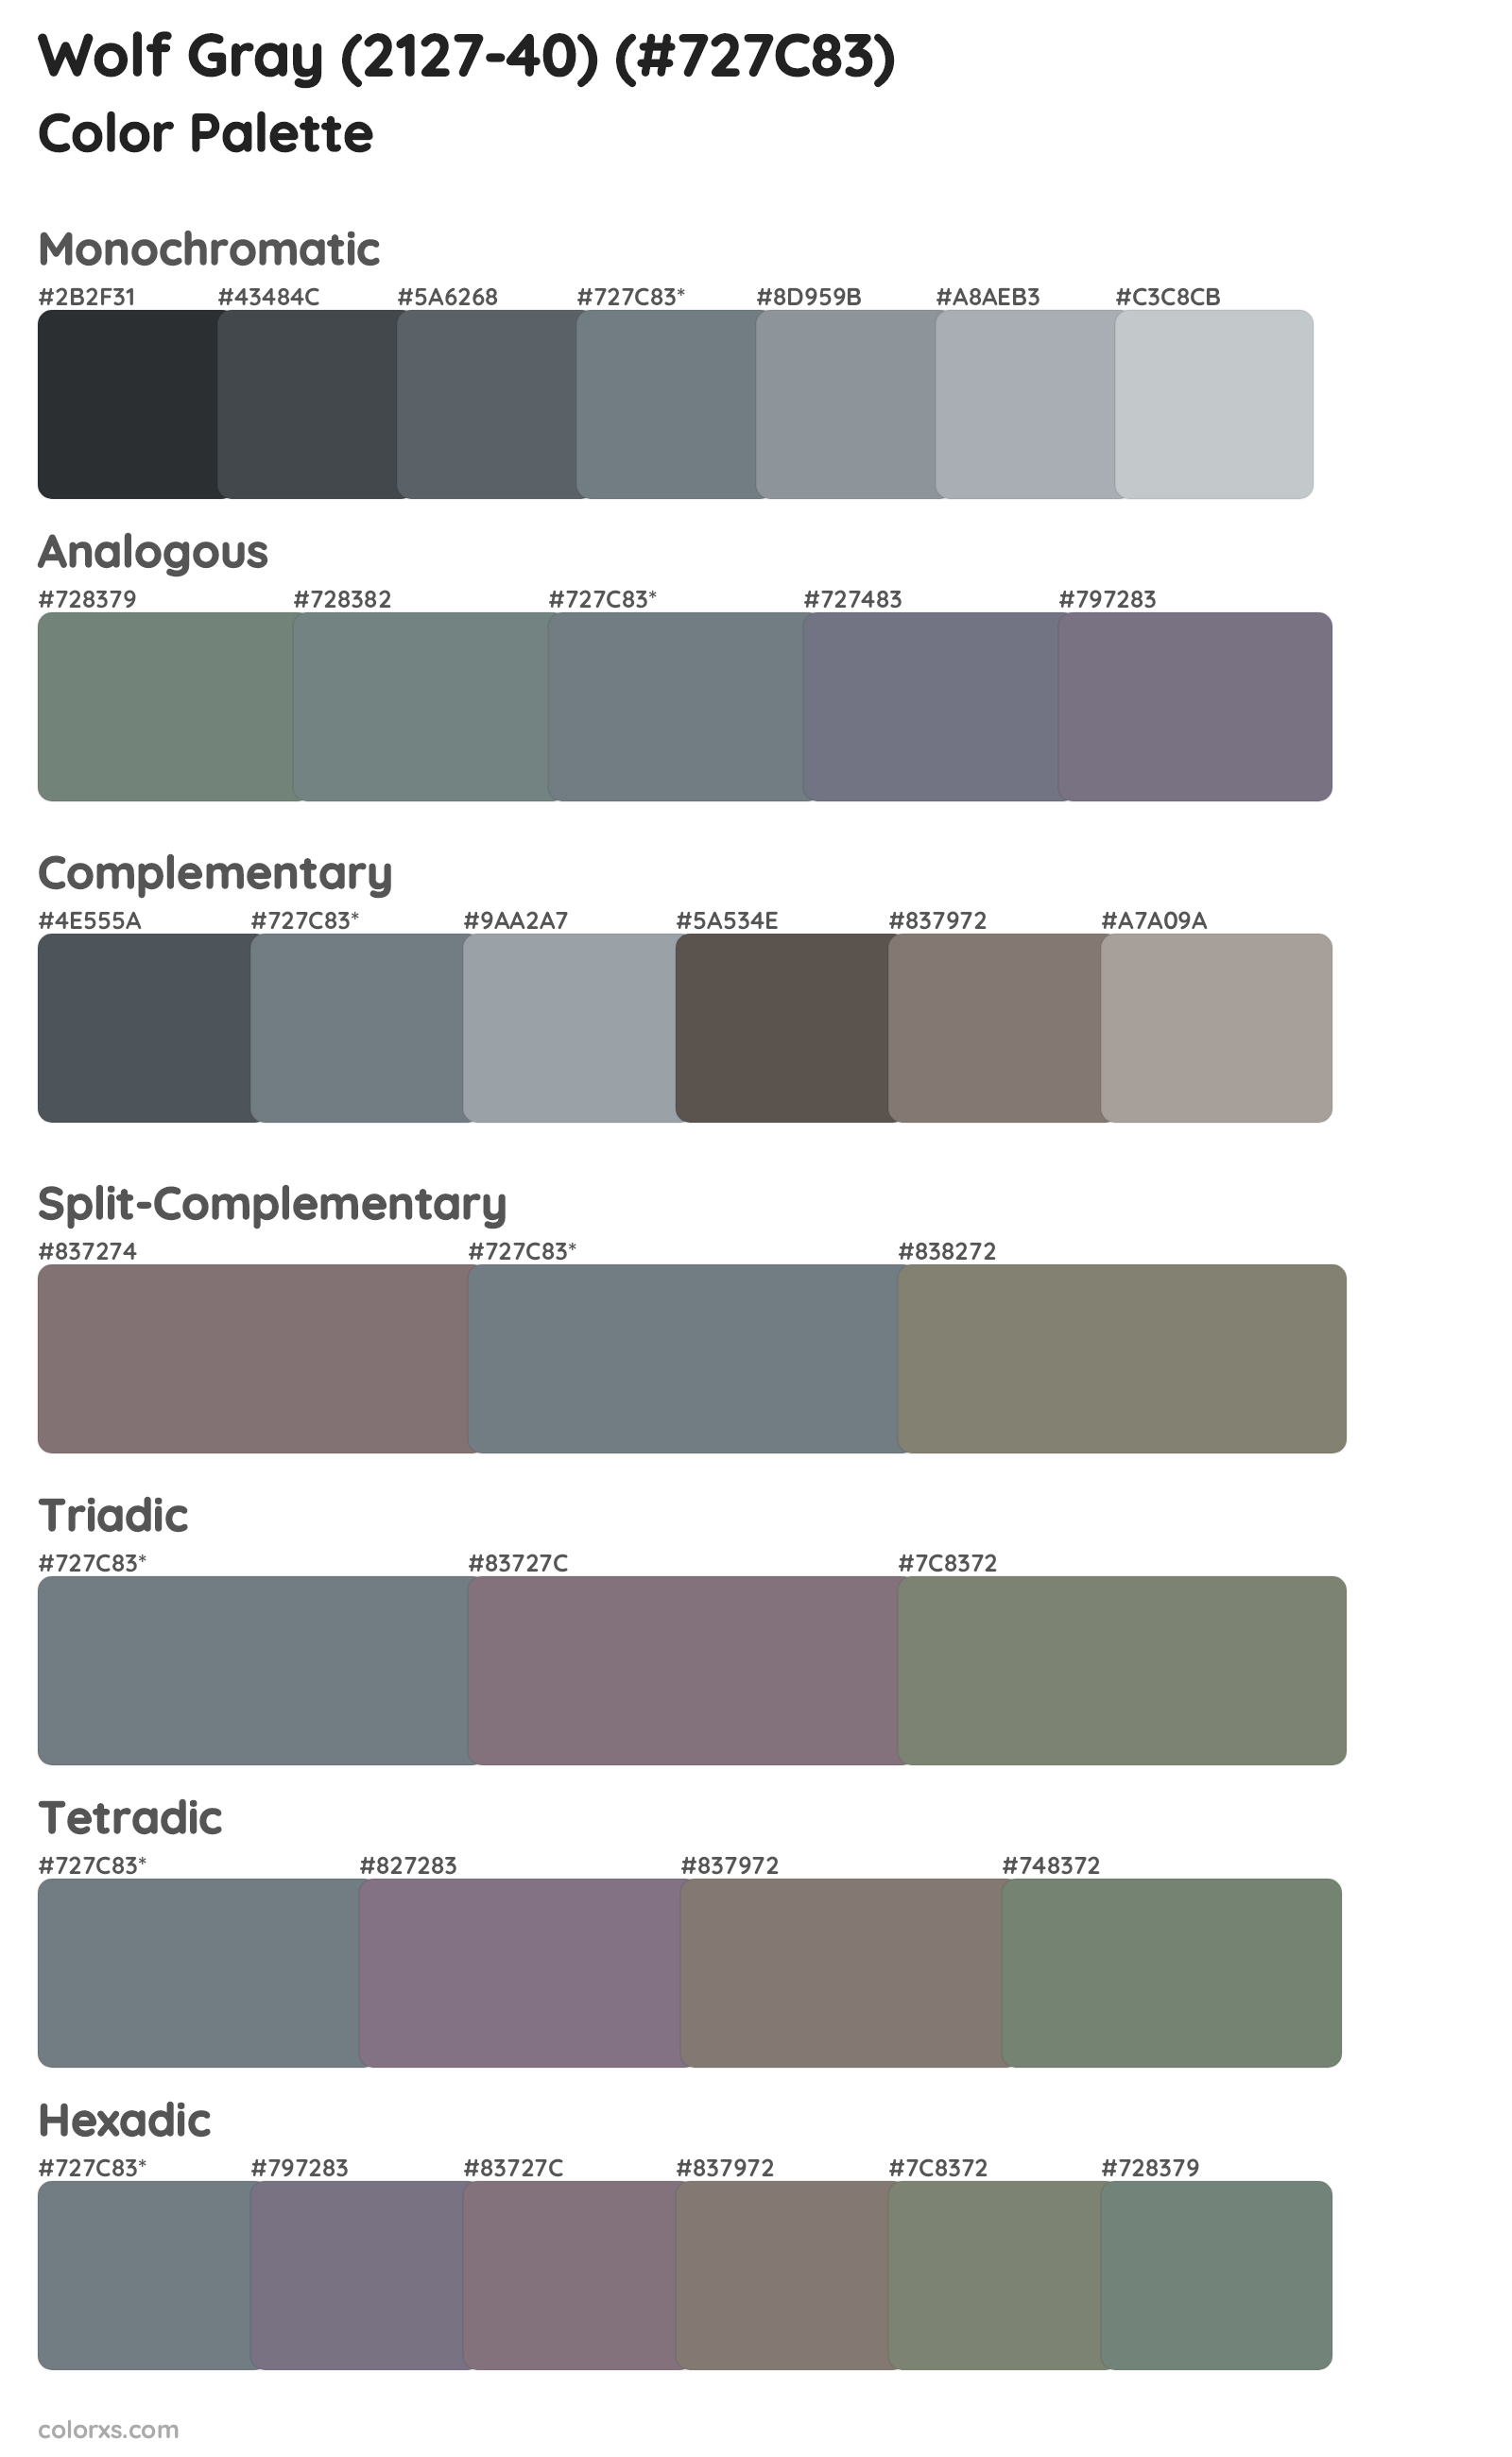 Wolf Gray (2127-40) Color Scheme Palettes